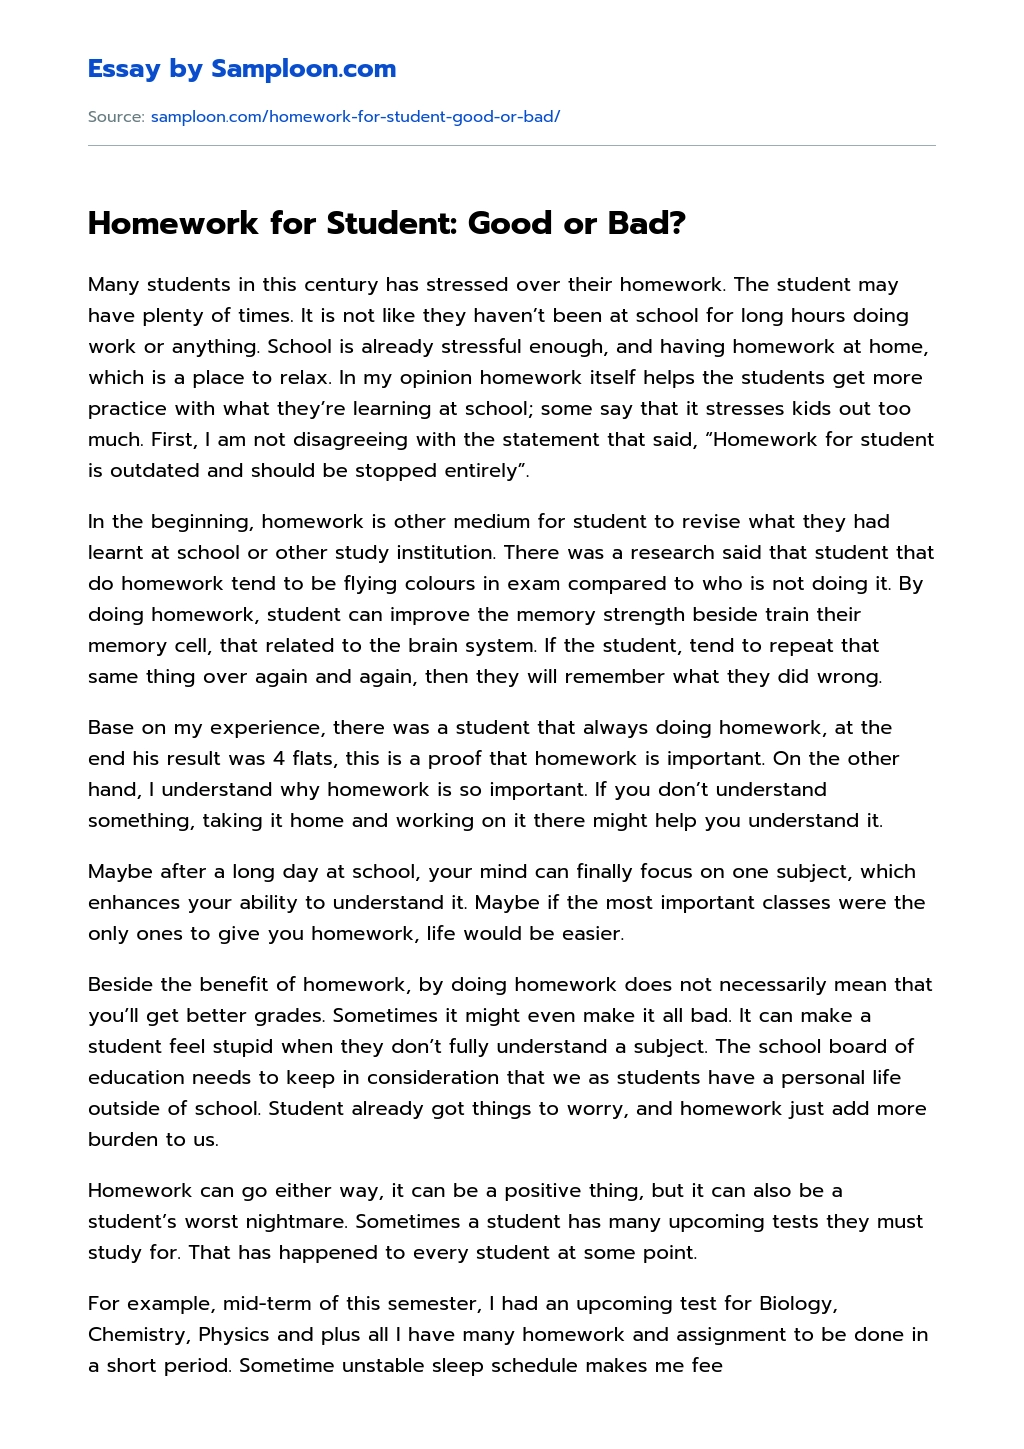 Homework for Student: Good or Bad? Argumentative Essay essay